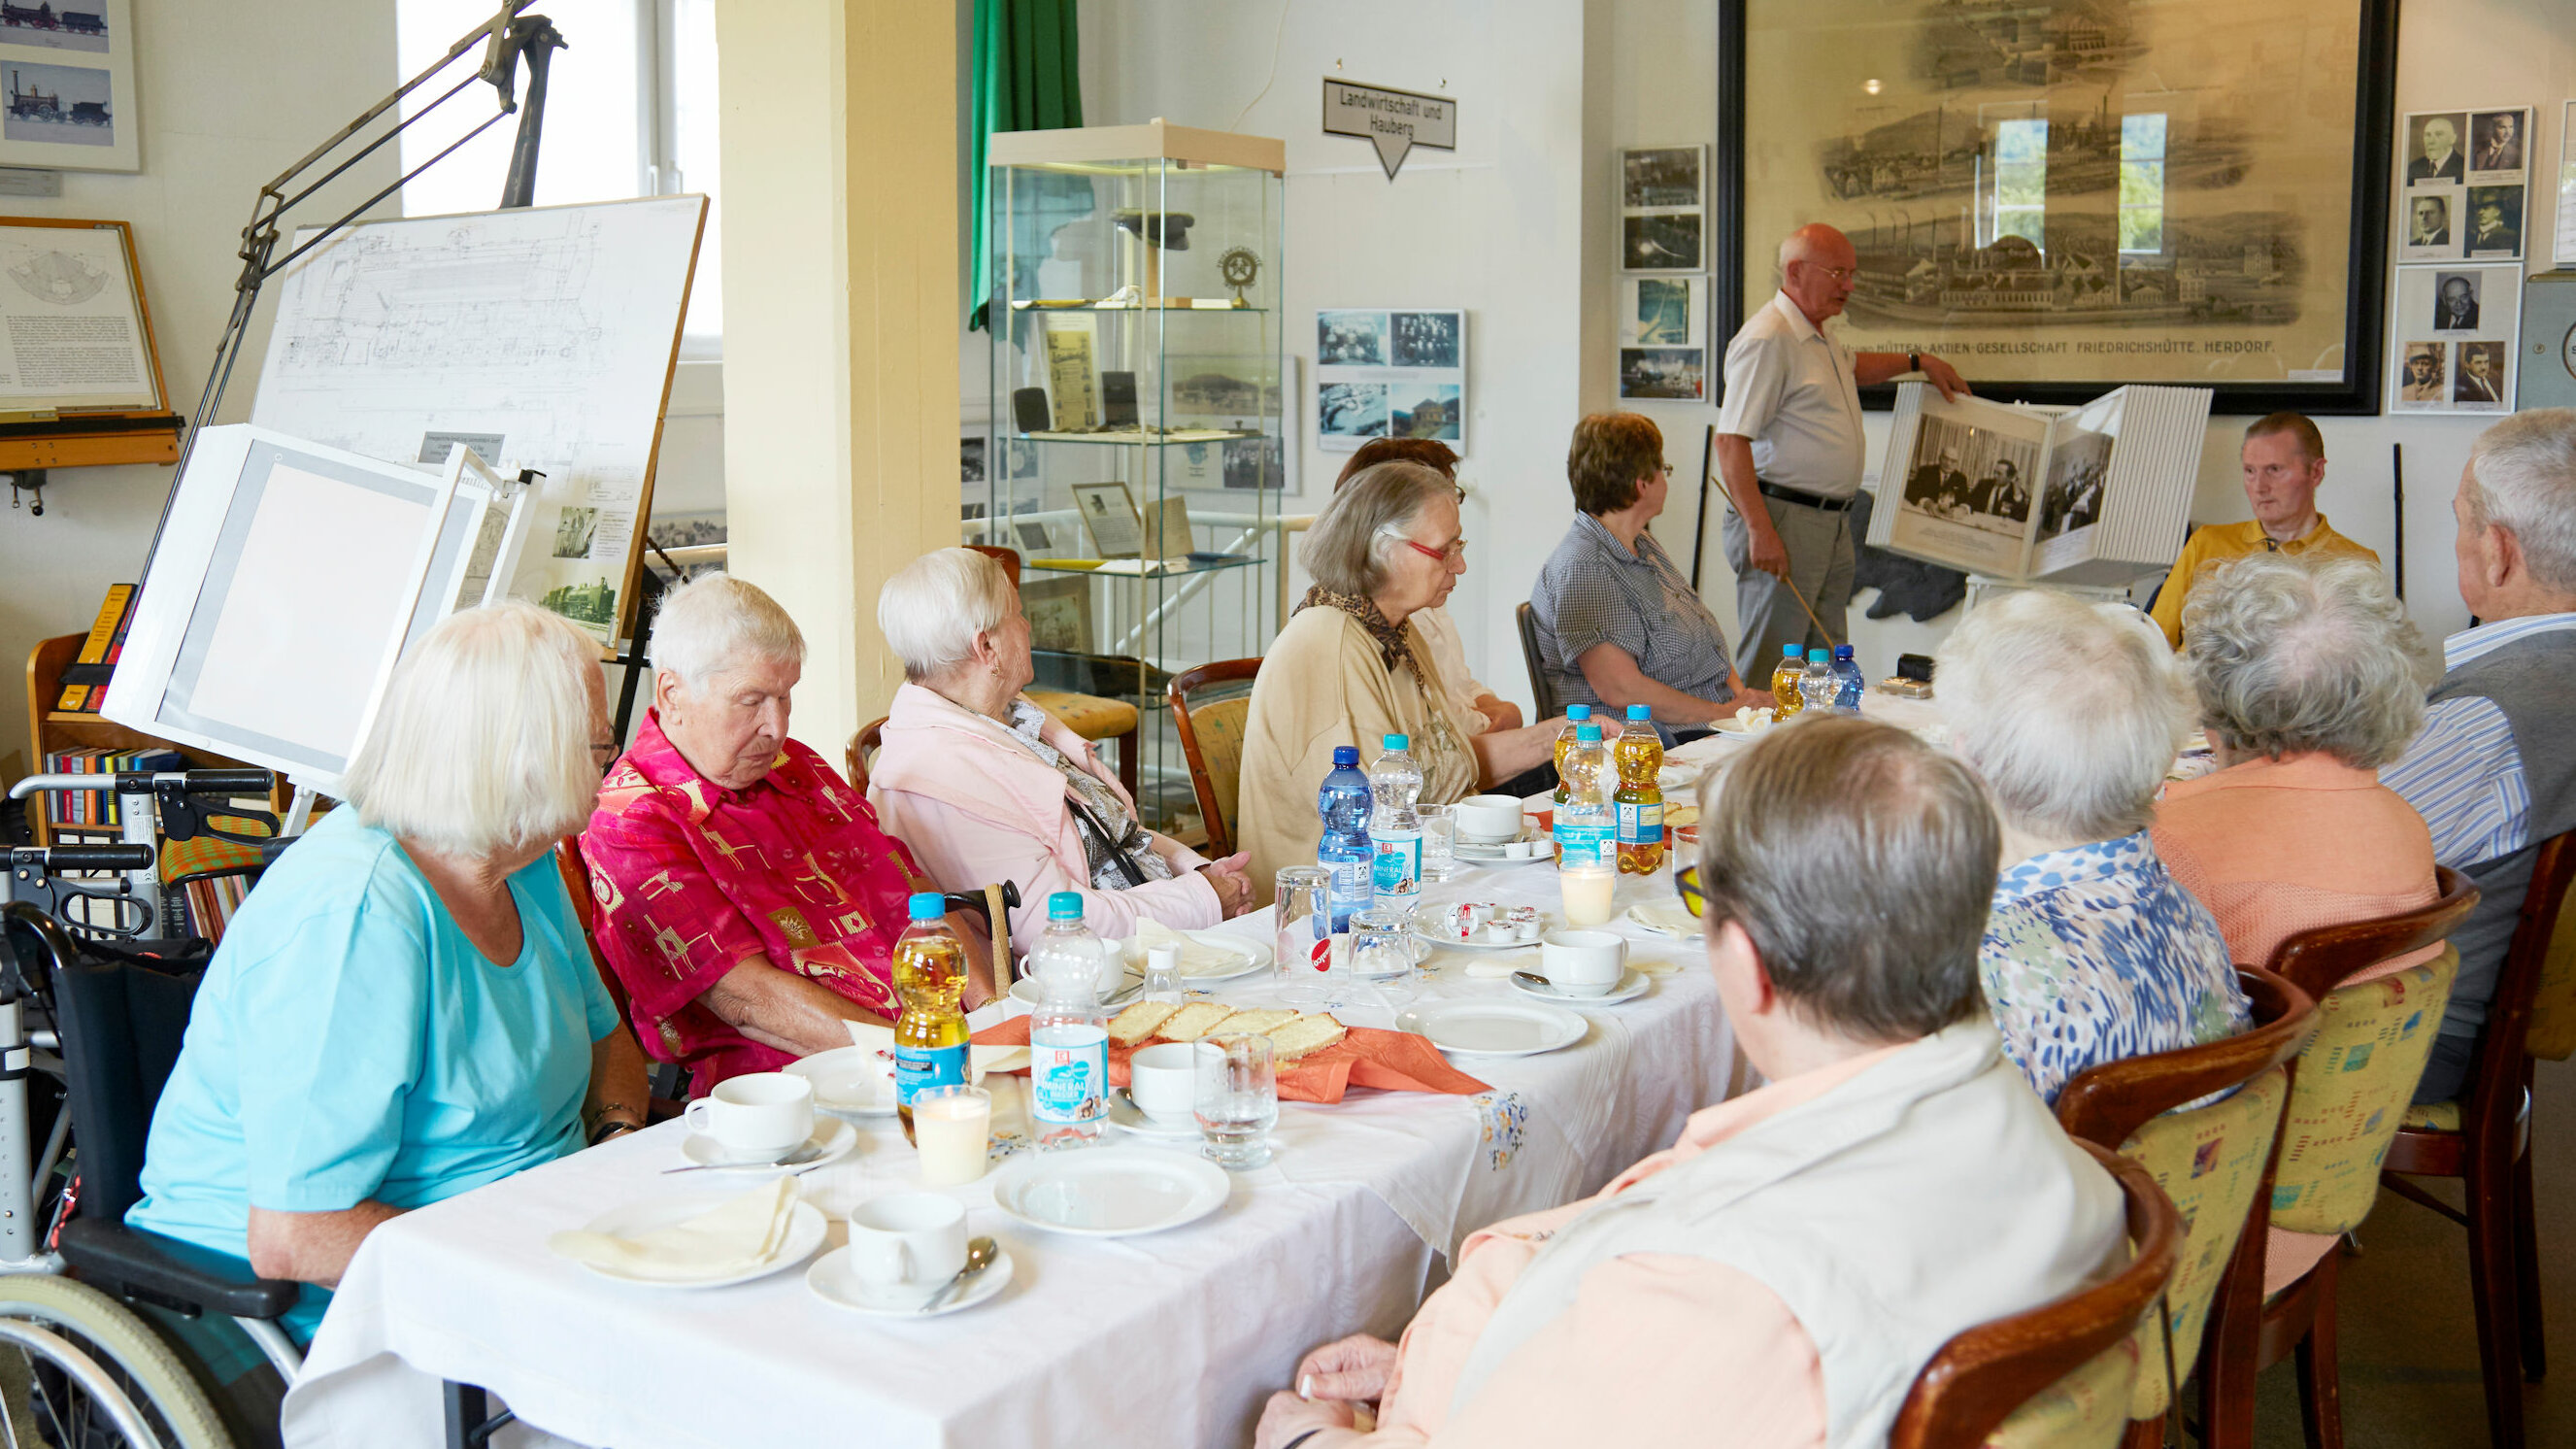 Auf dem Foto hat sich eine Gruppe von Senioren an einem langen Tisch versammelt. Ein weiterer älterer Herr zeigt alte Fotos